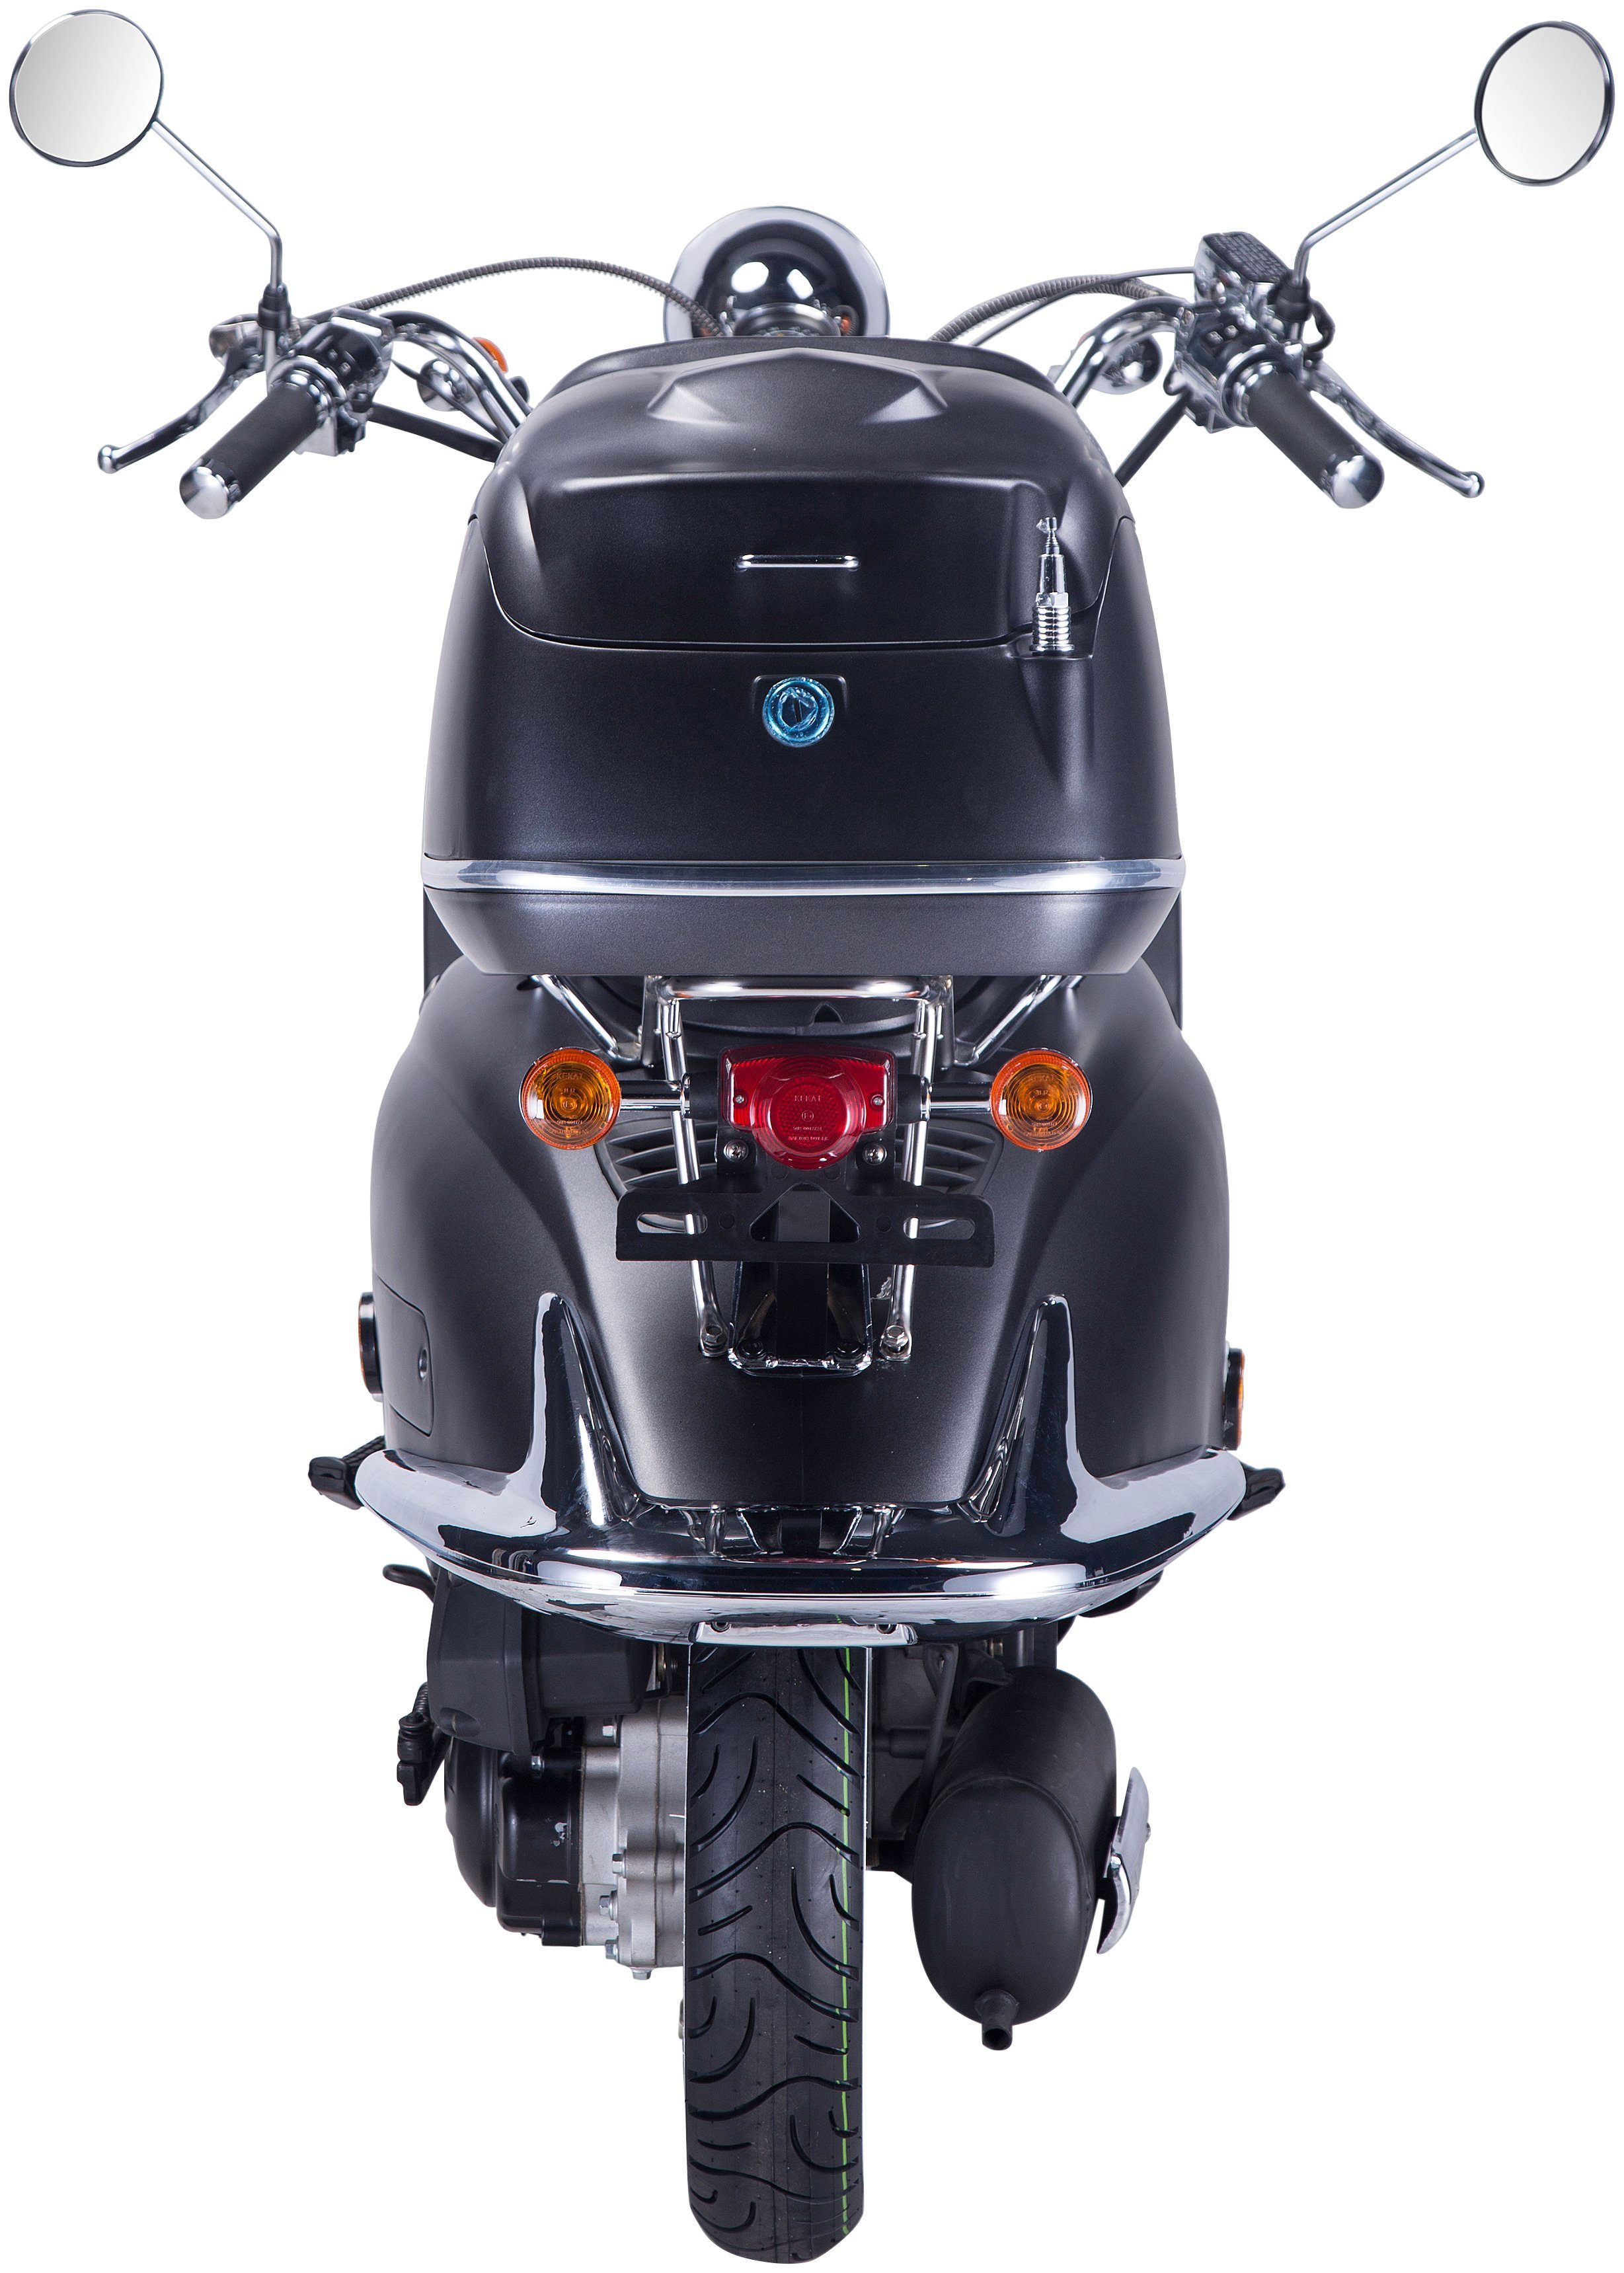 GT UNION Motorroller schwarz/silberfarben Euro 5, (Set), mit Topcase Strada, 45 ccm, 50 km/h